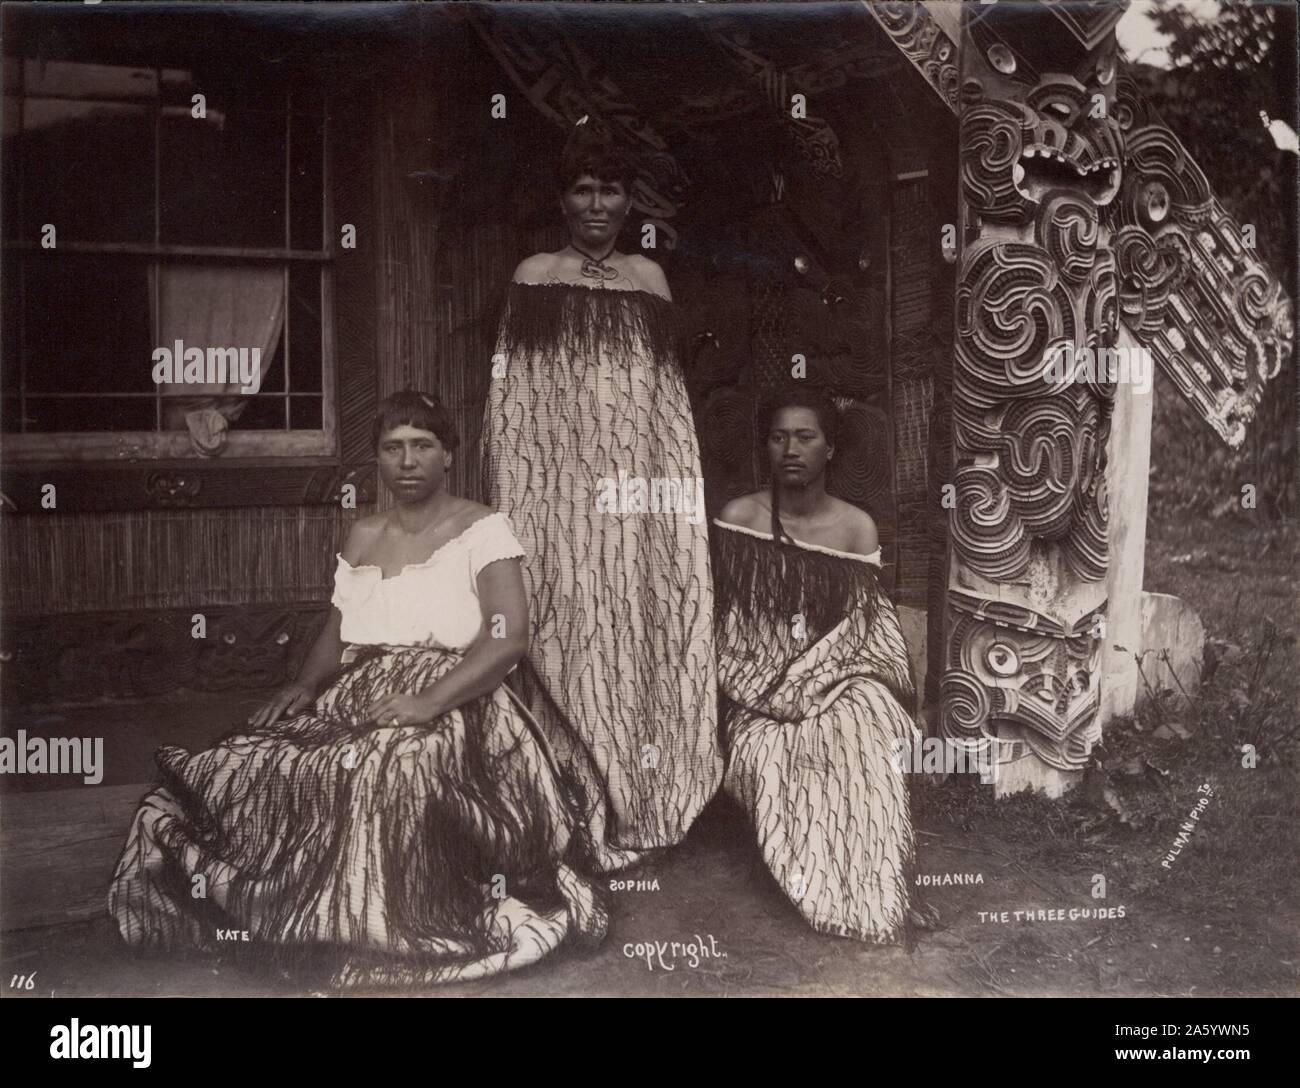 Führer-Kate, Sophia, Johanna (Maori-Mädchen), fotografiert von Elizabeth Pulman (1836-1900), einer der frühesten Fotografen Neuseelands. 1889 Stockfoto